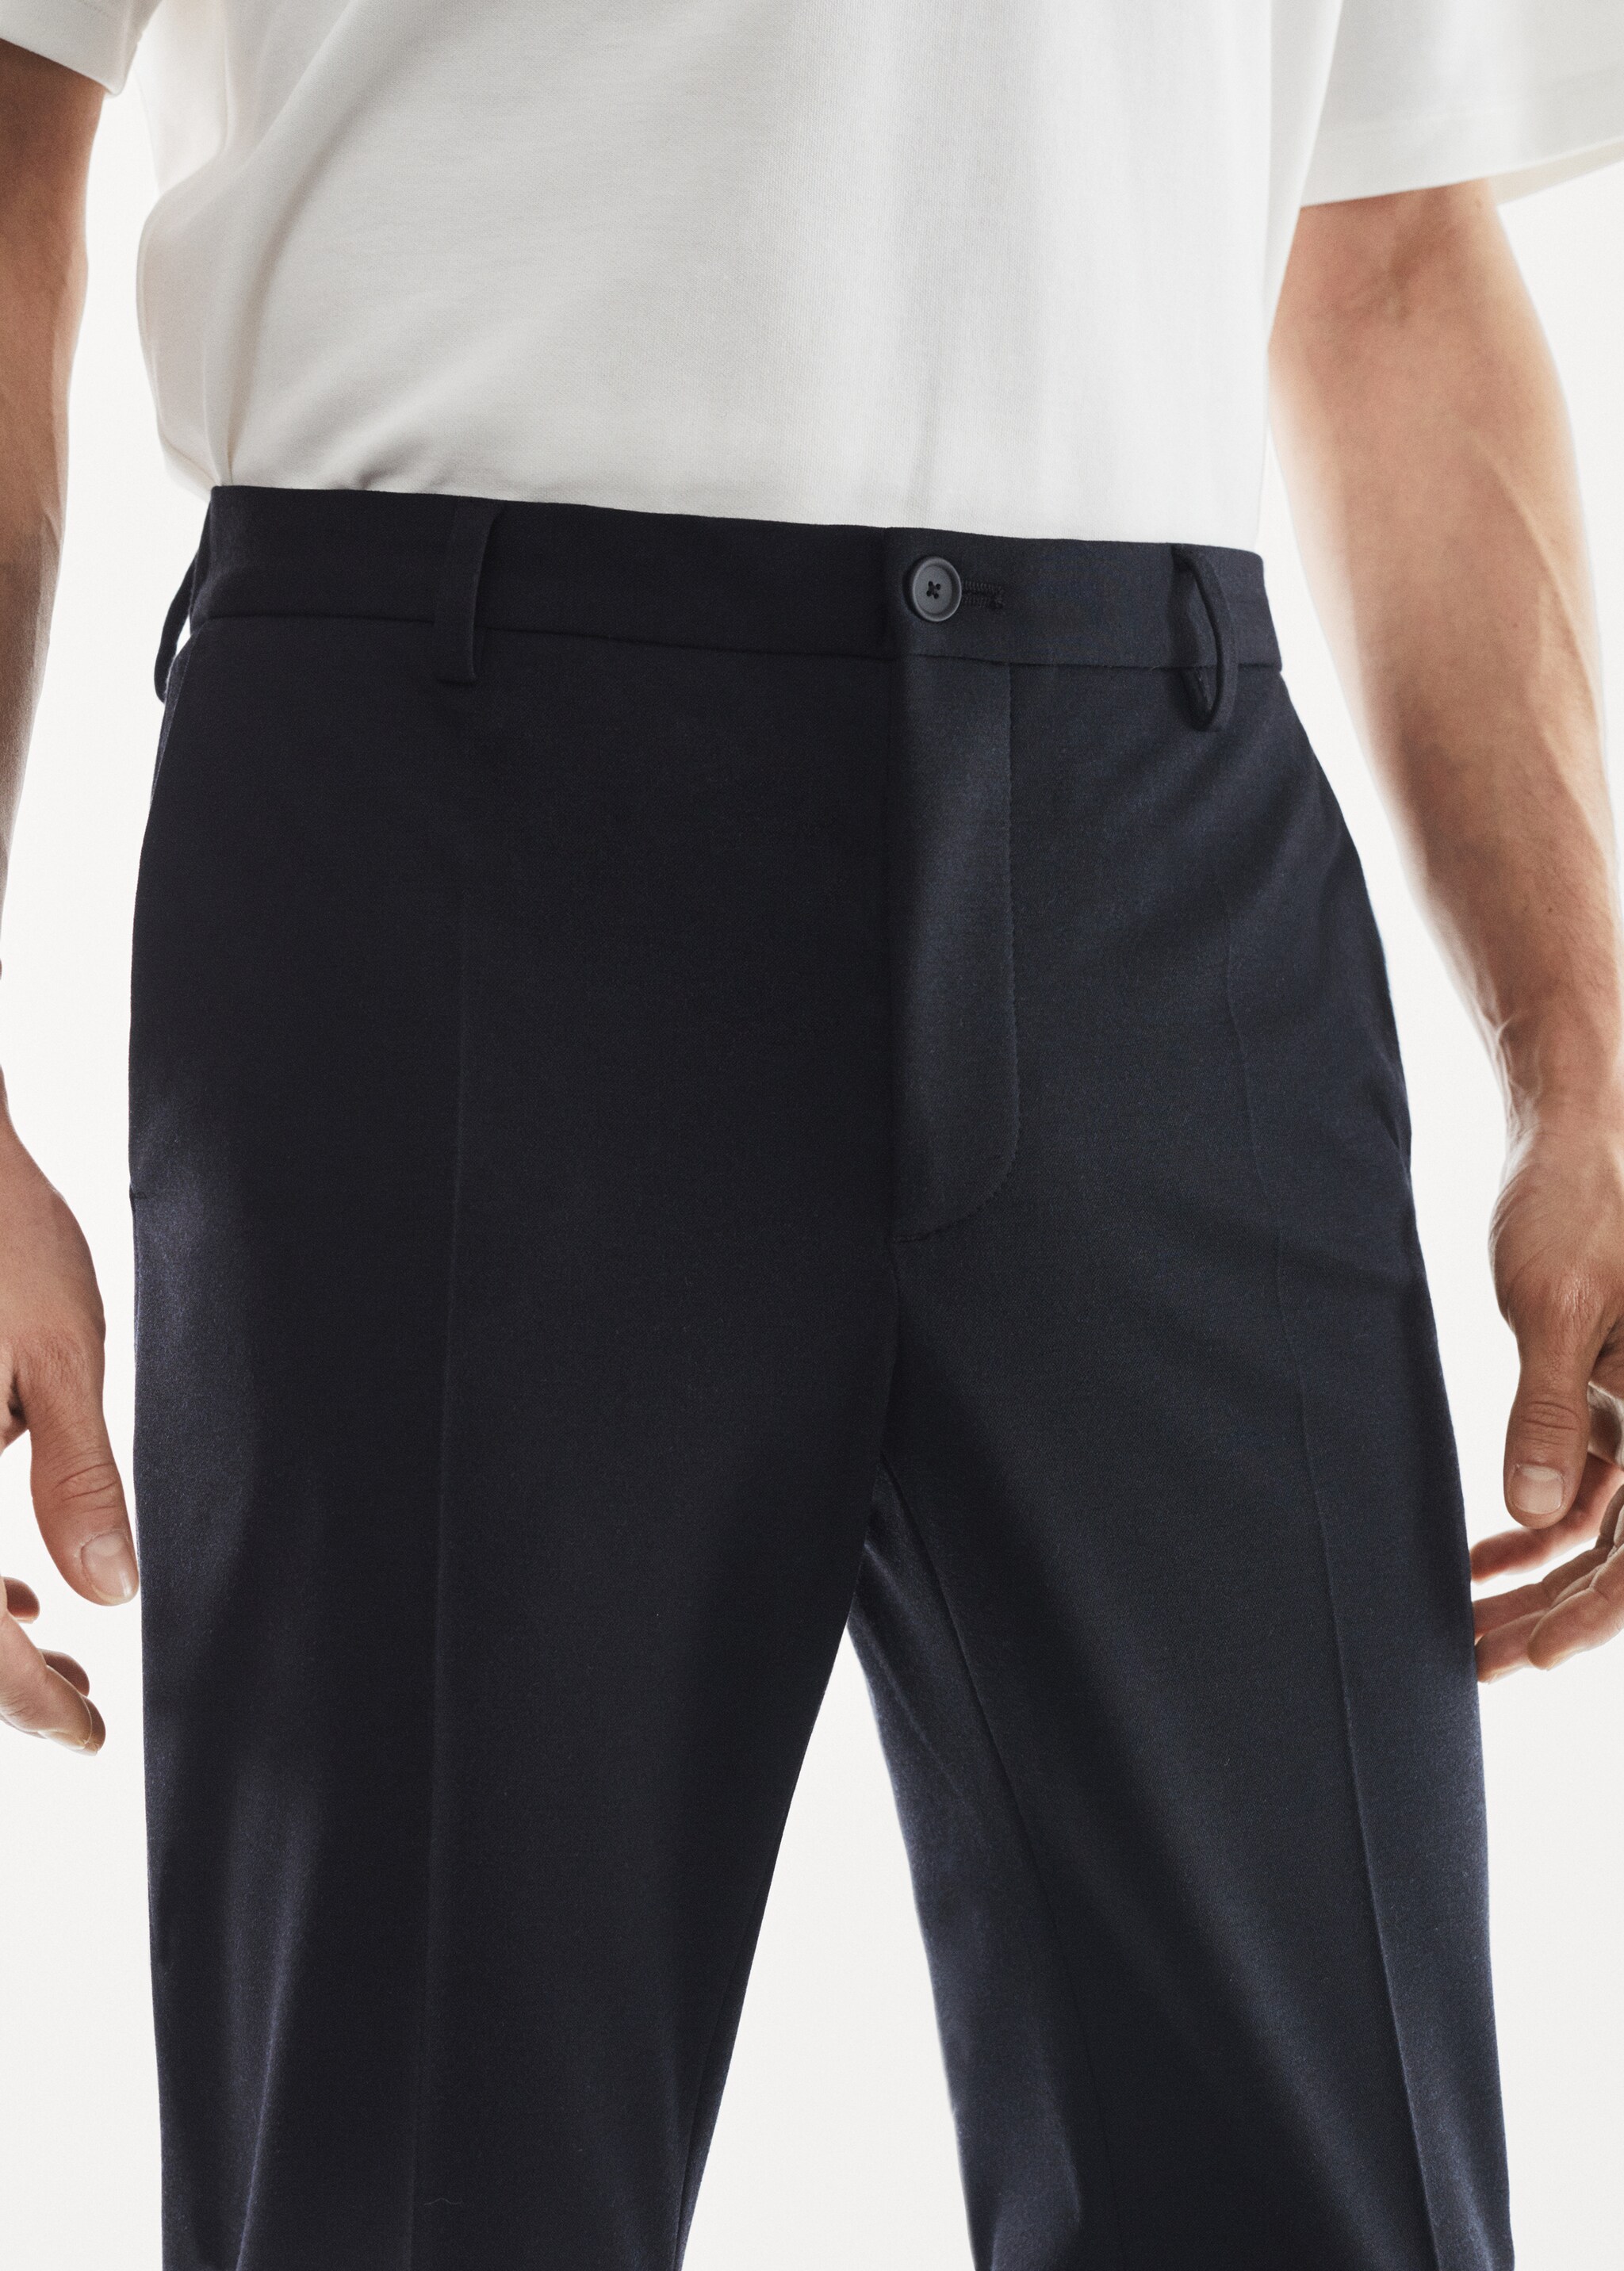 Pantalons vestir slim fit textura - Detall de l'article 1